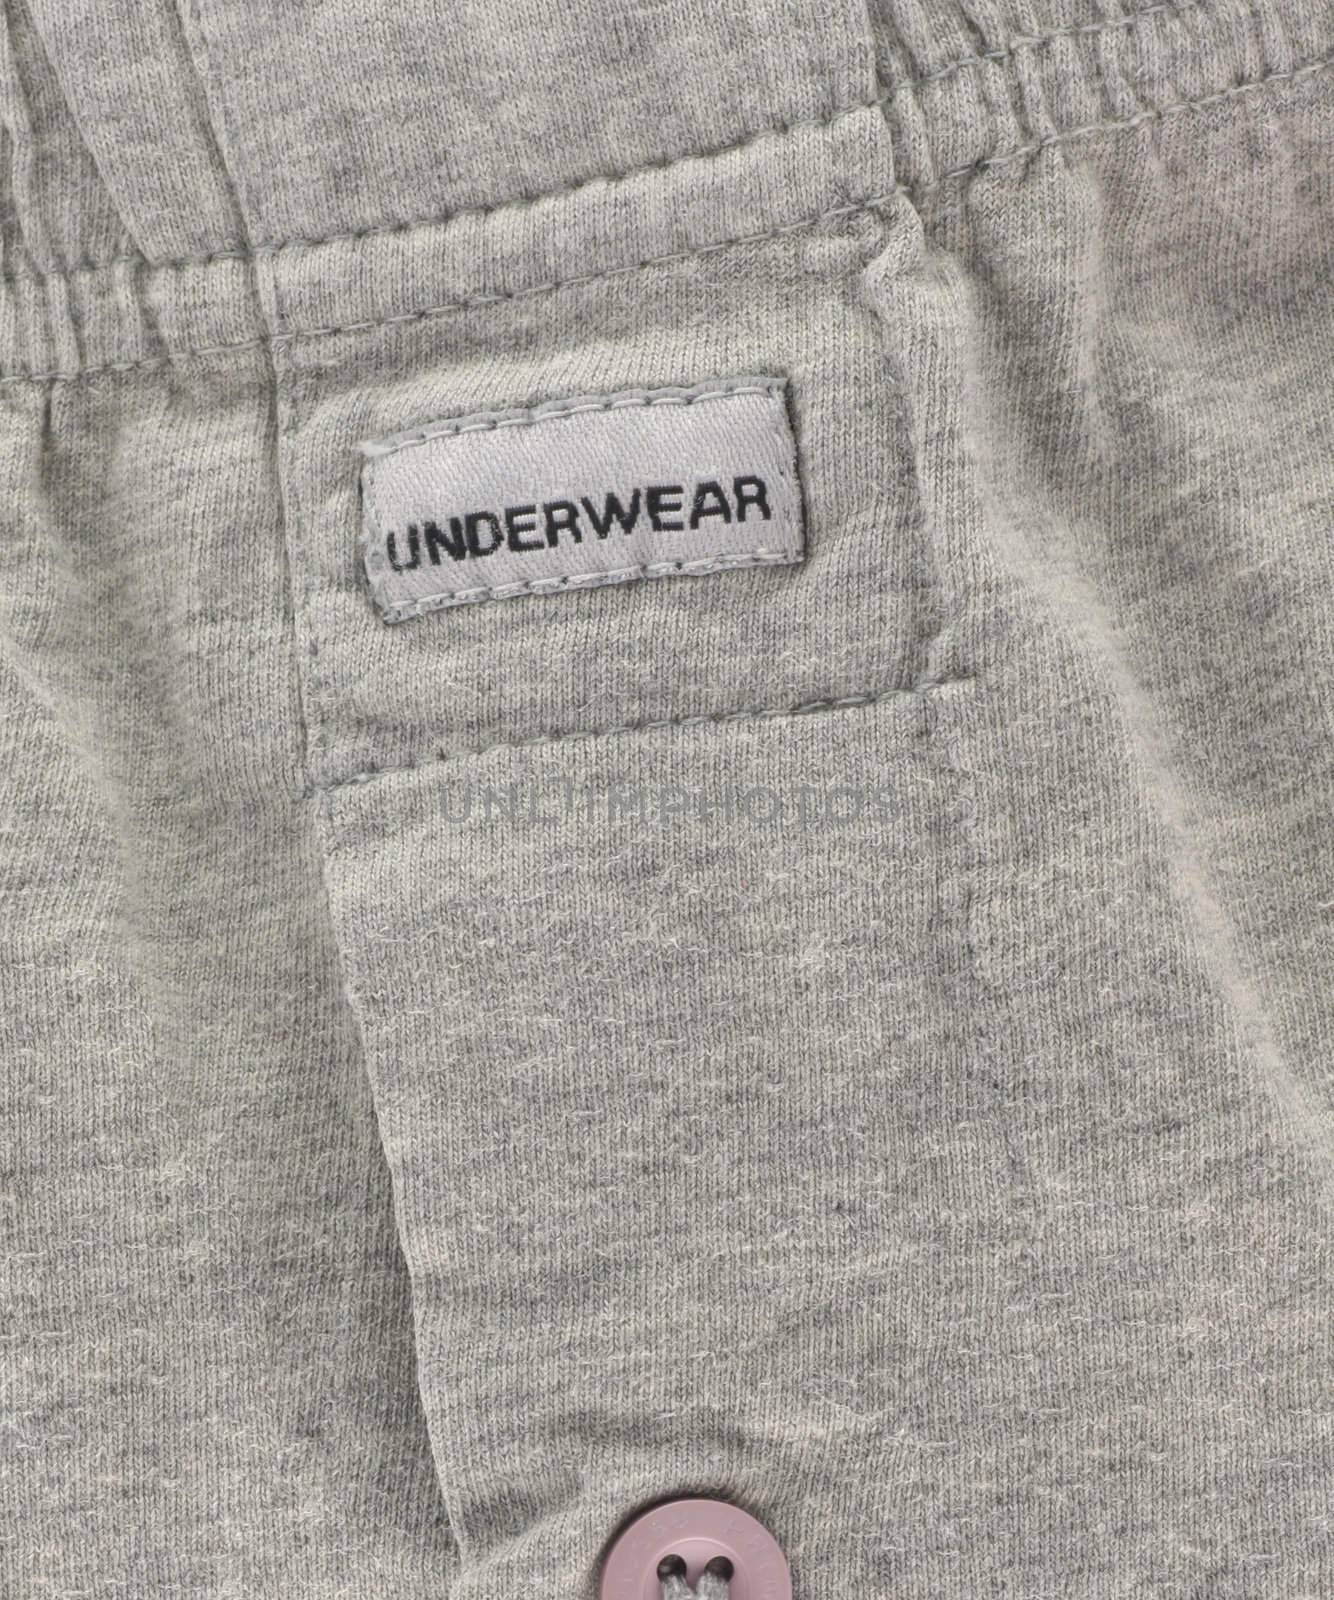 Underwear by Georgios